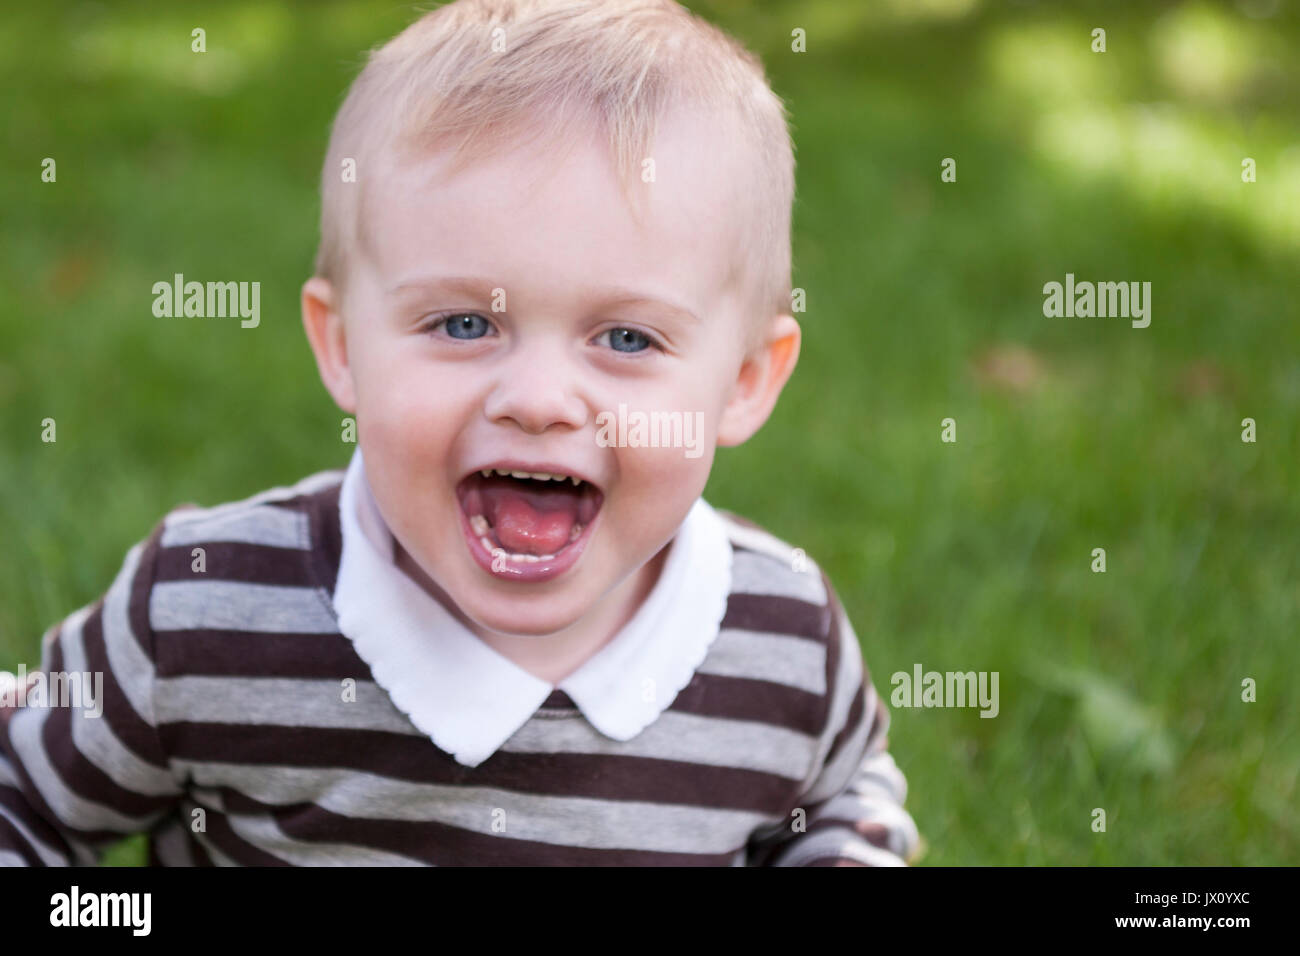 Nett lächelnden jungen kaukasischen 1-2 Jahre altes Kleinkind junge Spaß herum laufen in einem Park im freien Model Release: Ja. Property Release: Nein. Stockfoto